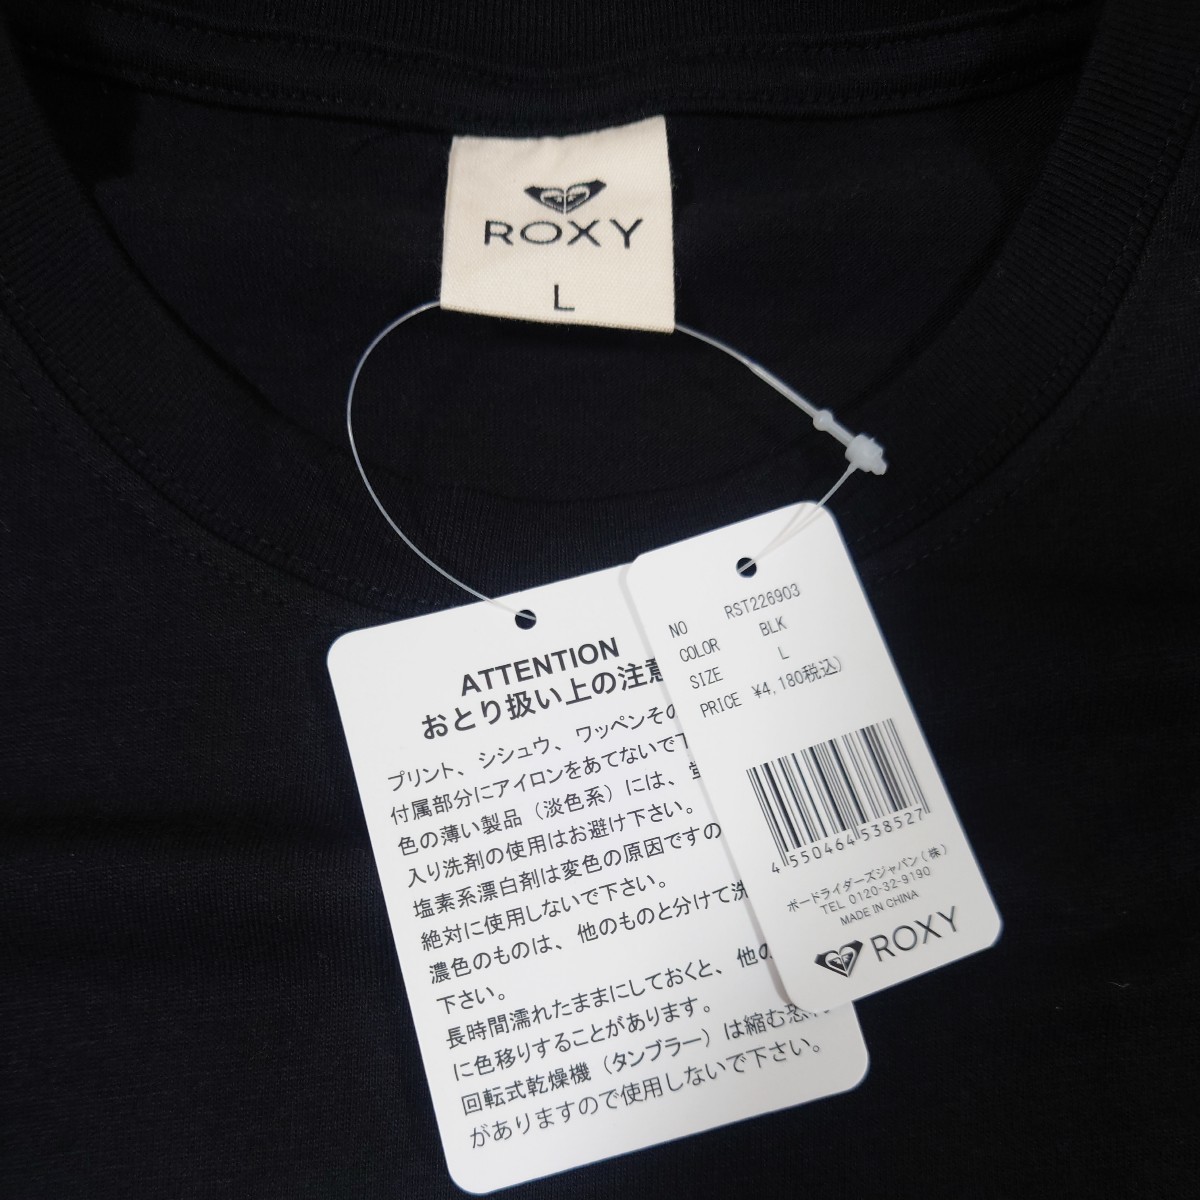 [ обычная цена 4180 иен ]ROXY короткий рукав футболка прохладный шея женский RST226903 размер L ②